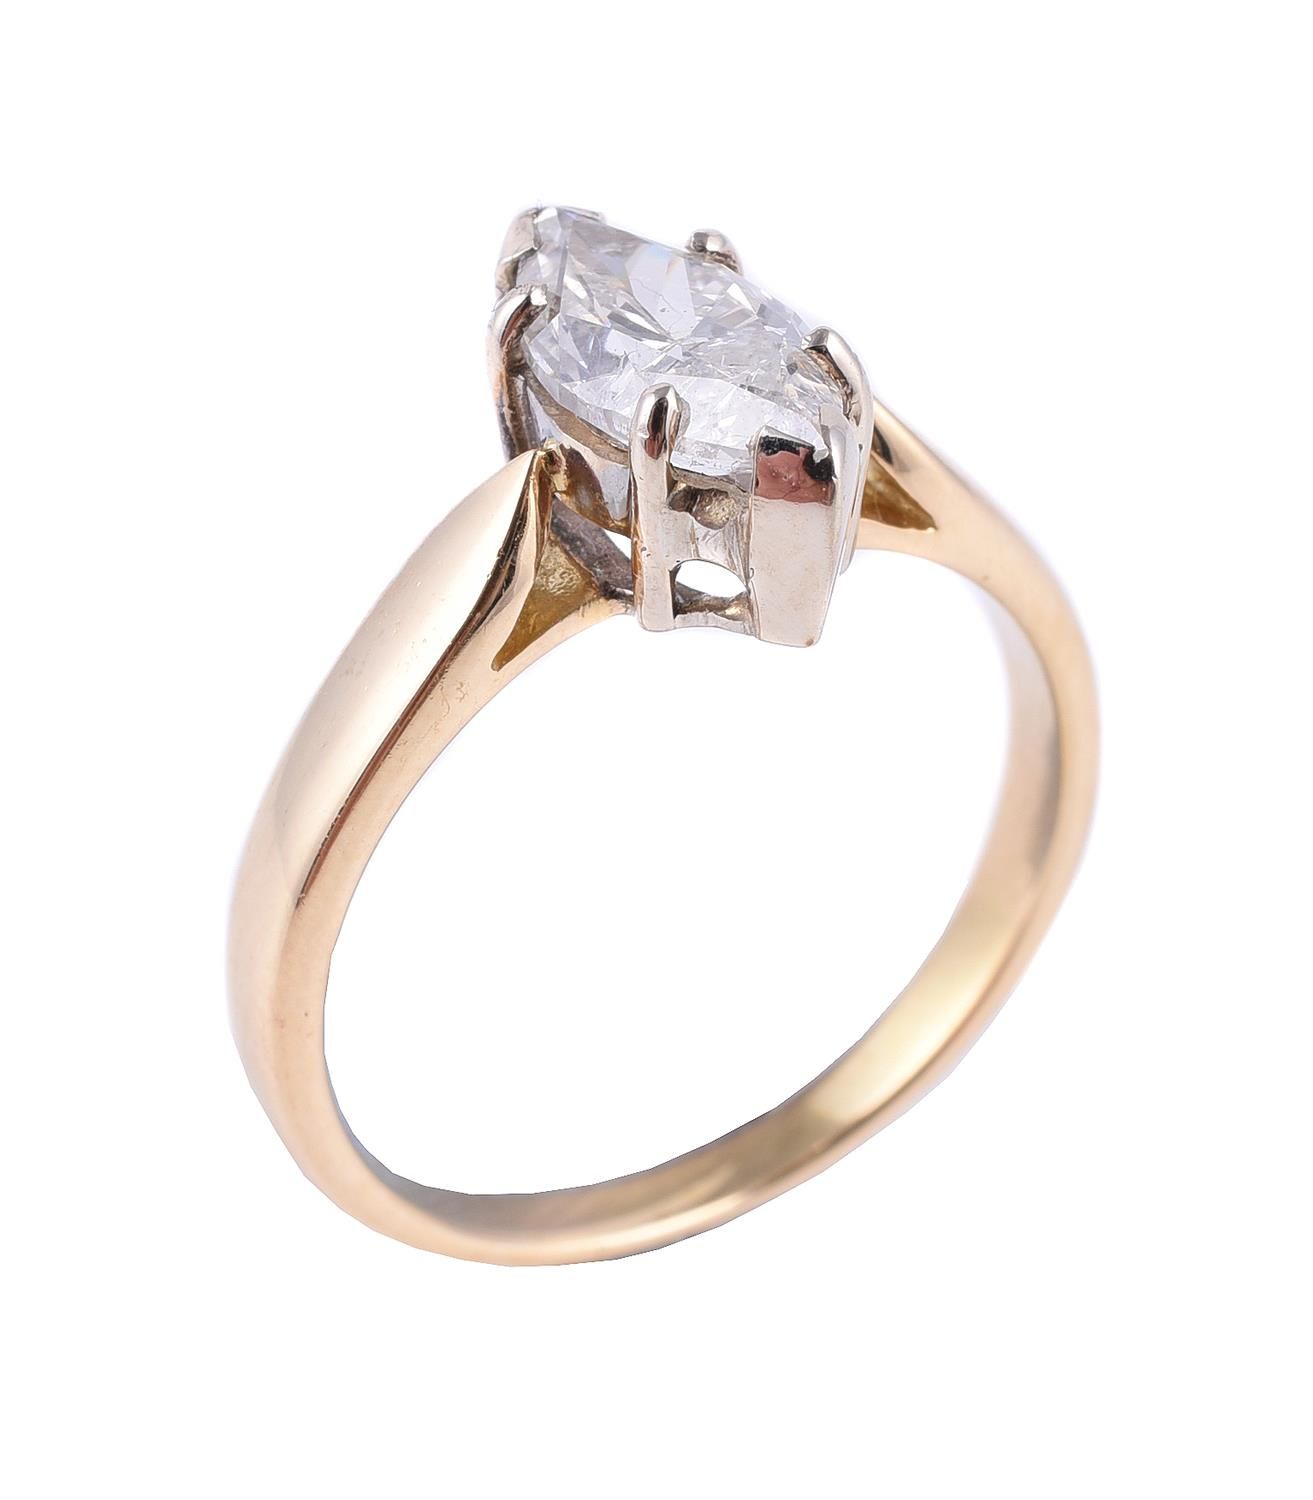 A single stone diamond ring 一枚单石钻石戒指，榄尖形切割钻石估计重1克拉，六爪镶嵌，18K金部分印记，手指尺寸N 1/2，总重3.7&hellip;